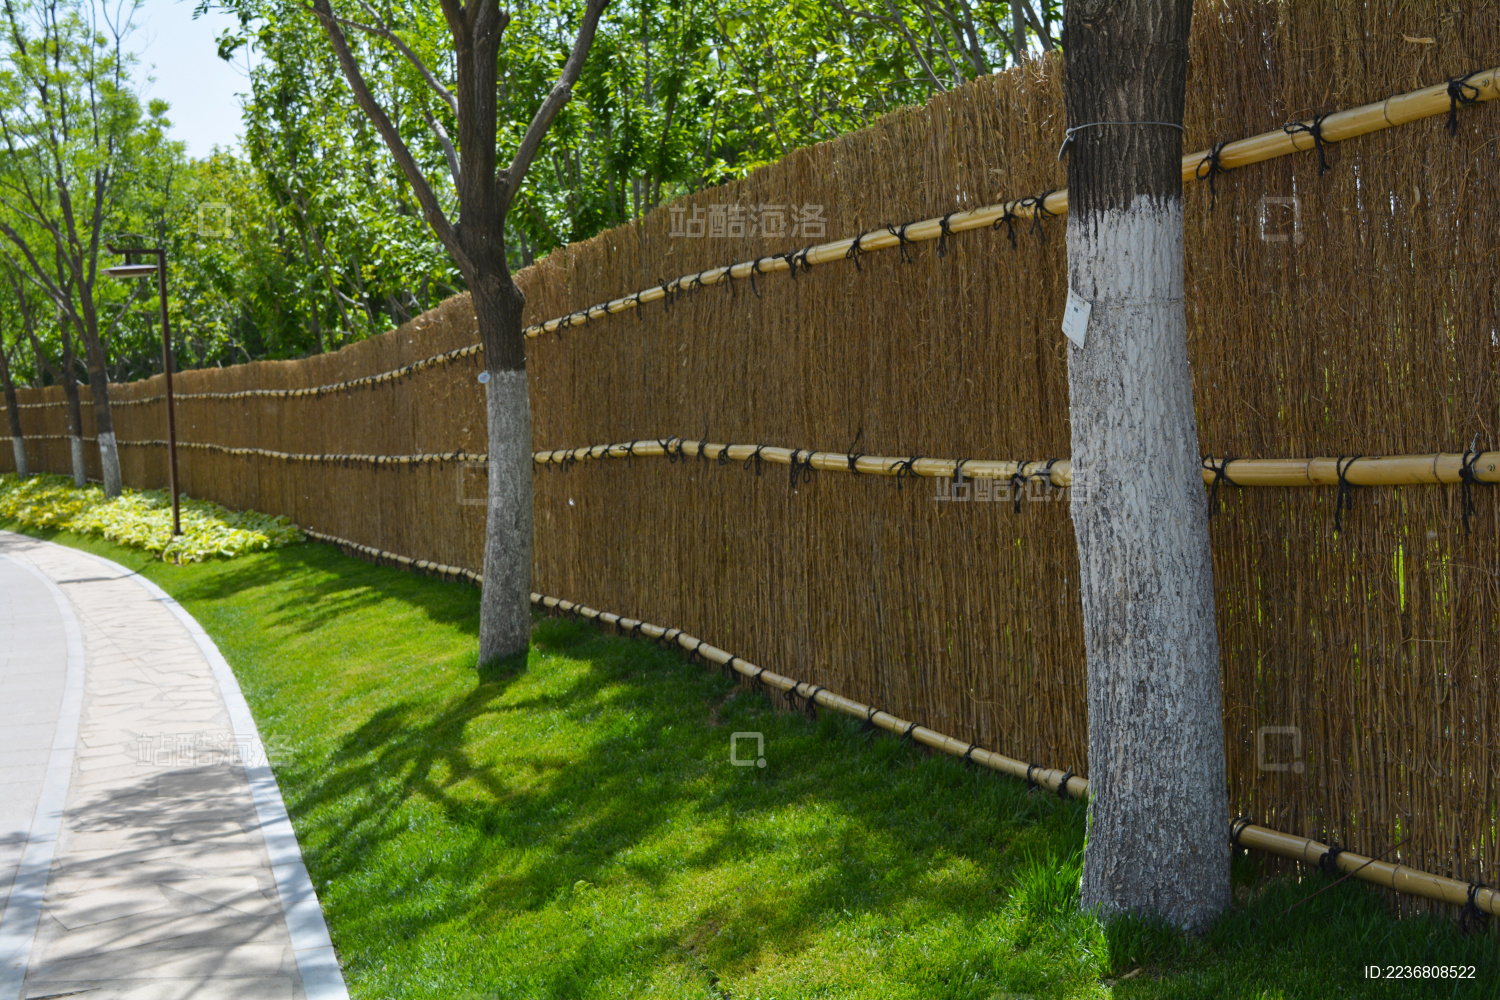 厂家直供竹网格菱形竹篱笆 竹栅竹护栏园艺竹围栏网护栏装饰竹-阿里巴巴